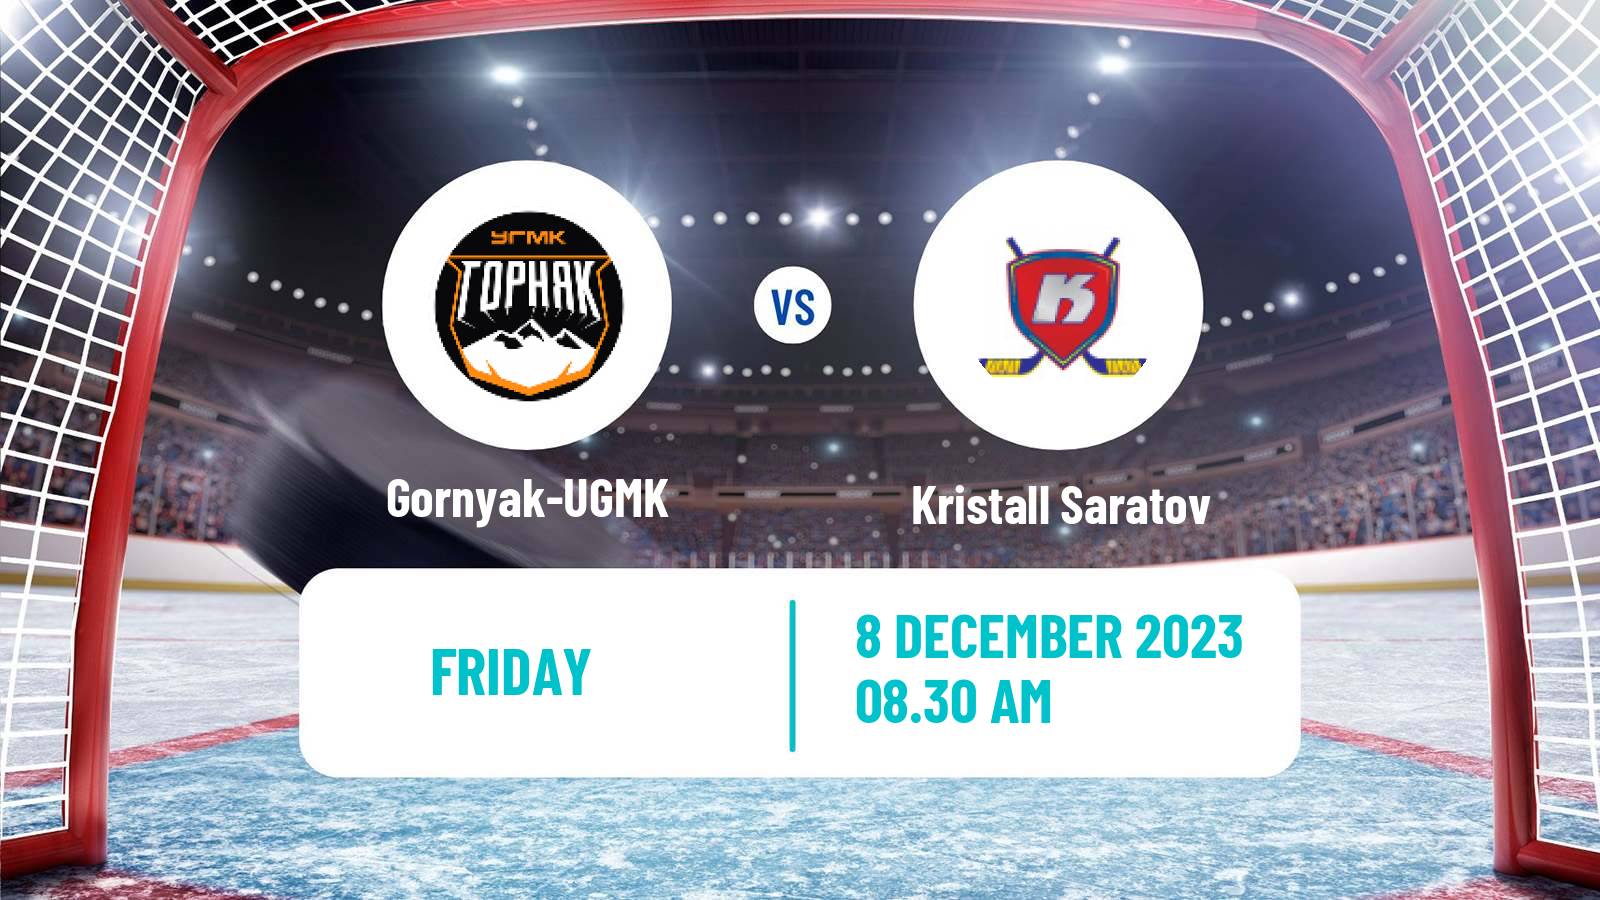 Hockey VHL Gornyak-UGMK - Kristall Saratov